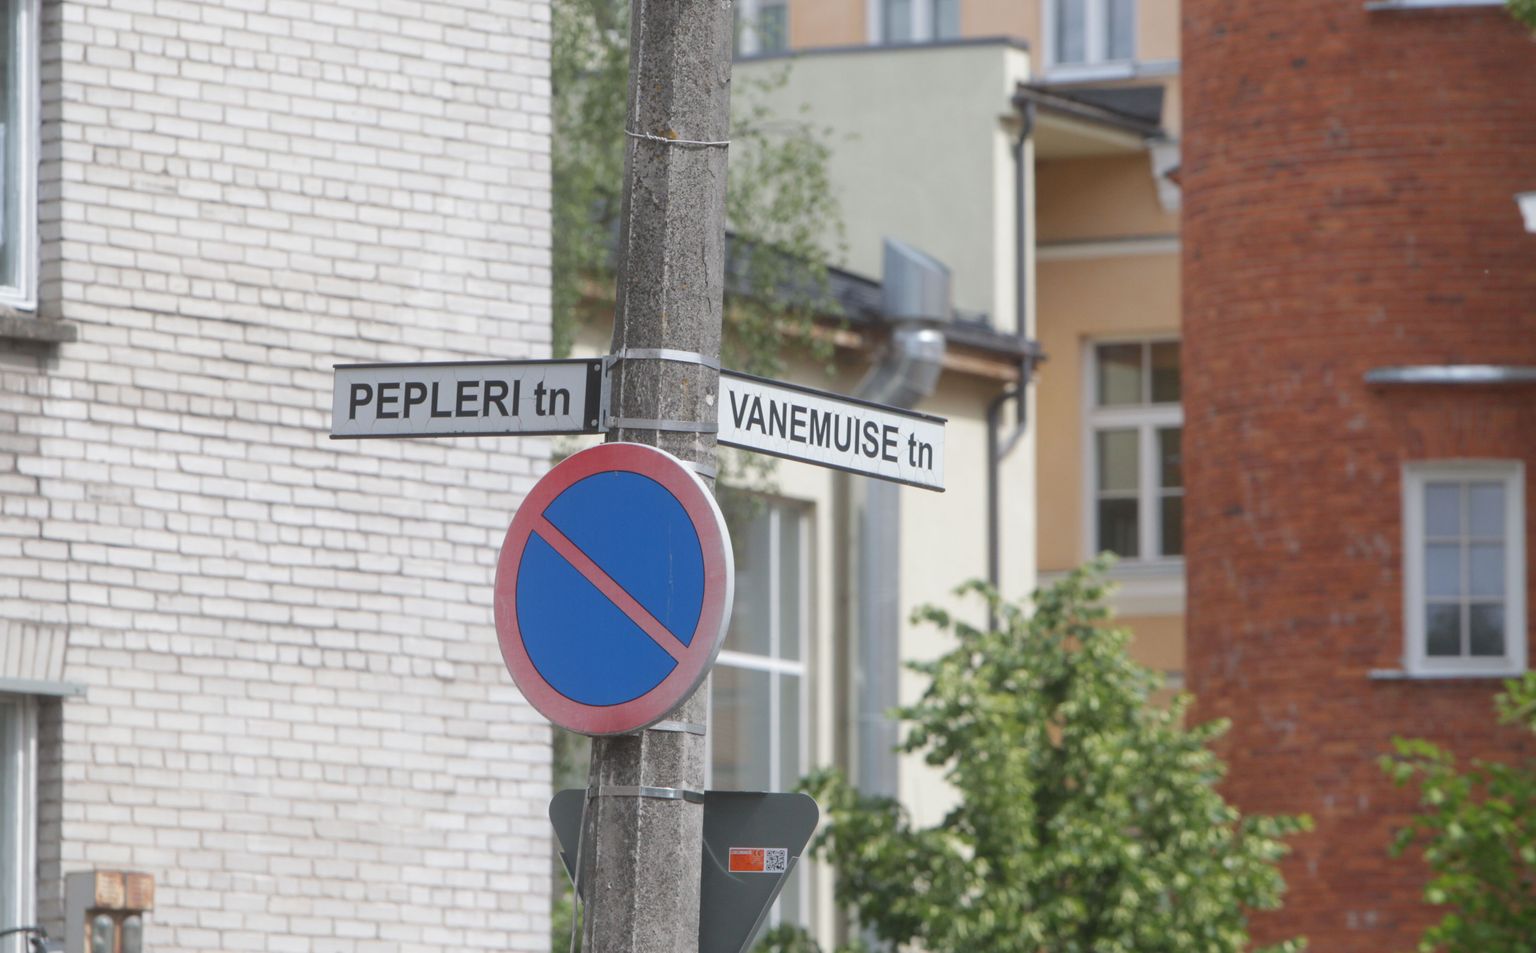 Перекресток Ванемуйзе и Пеплери в Тарту, где произошла описываемая история.